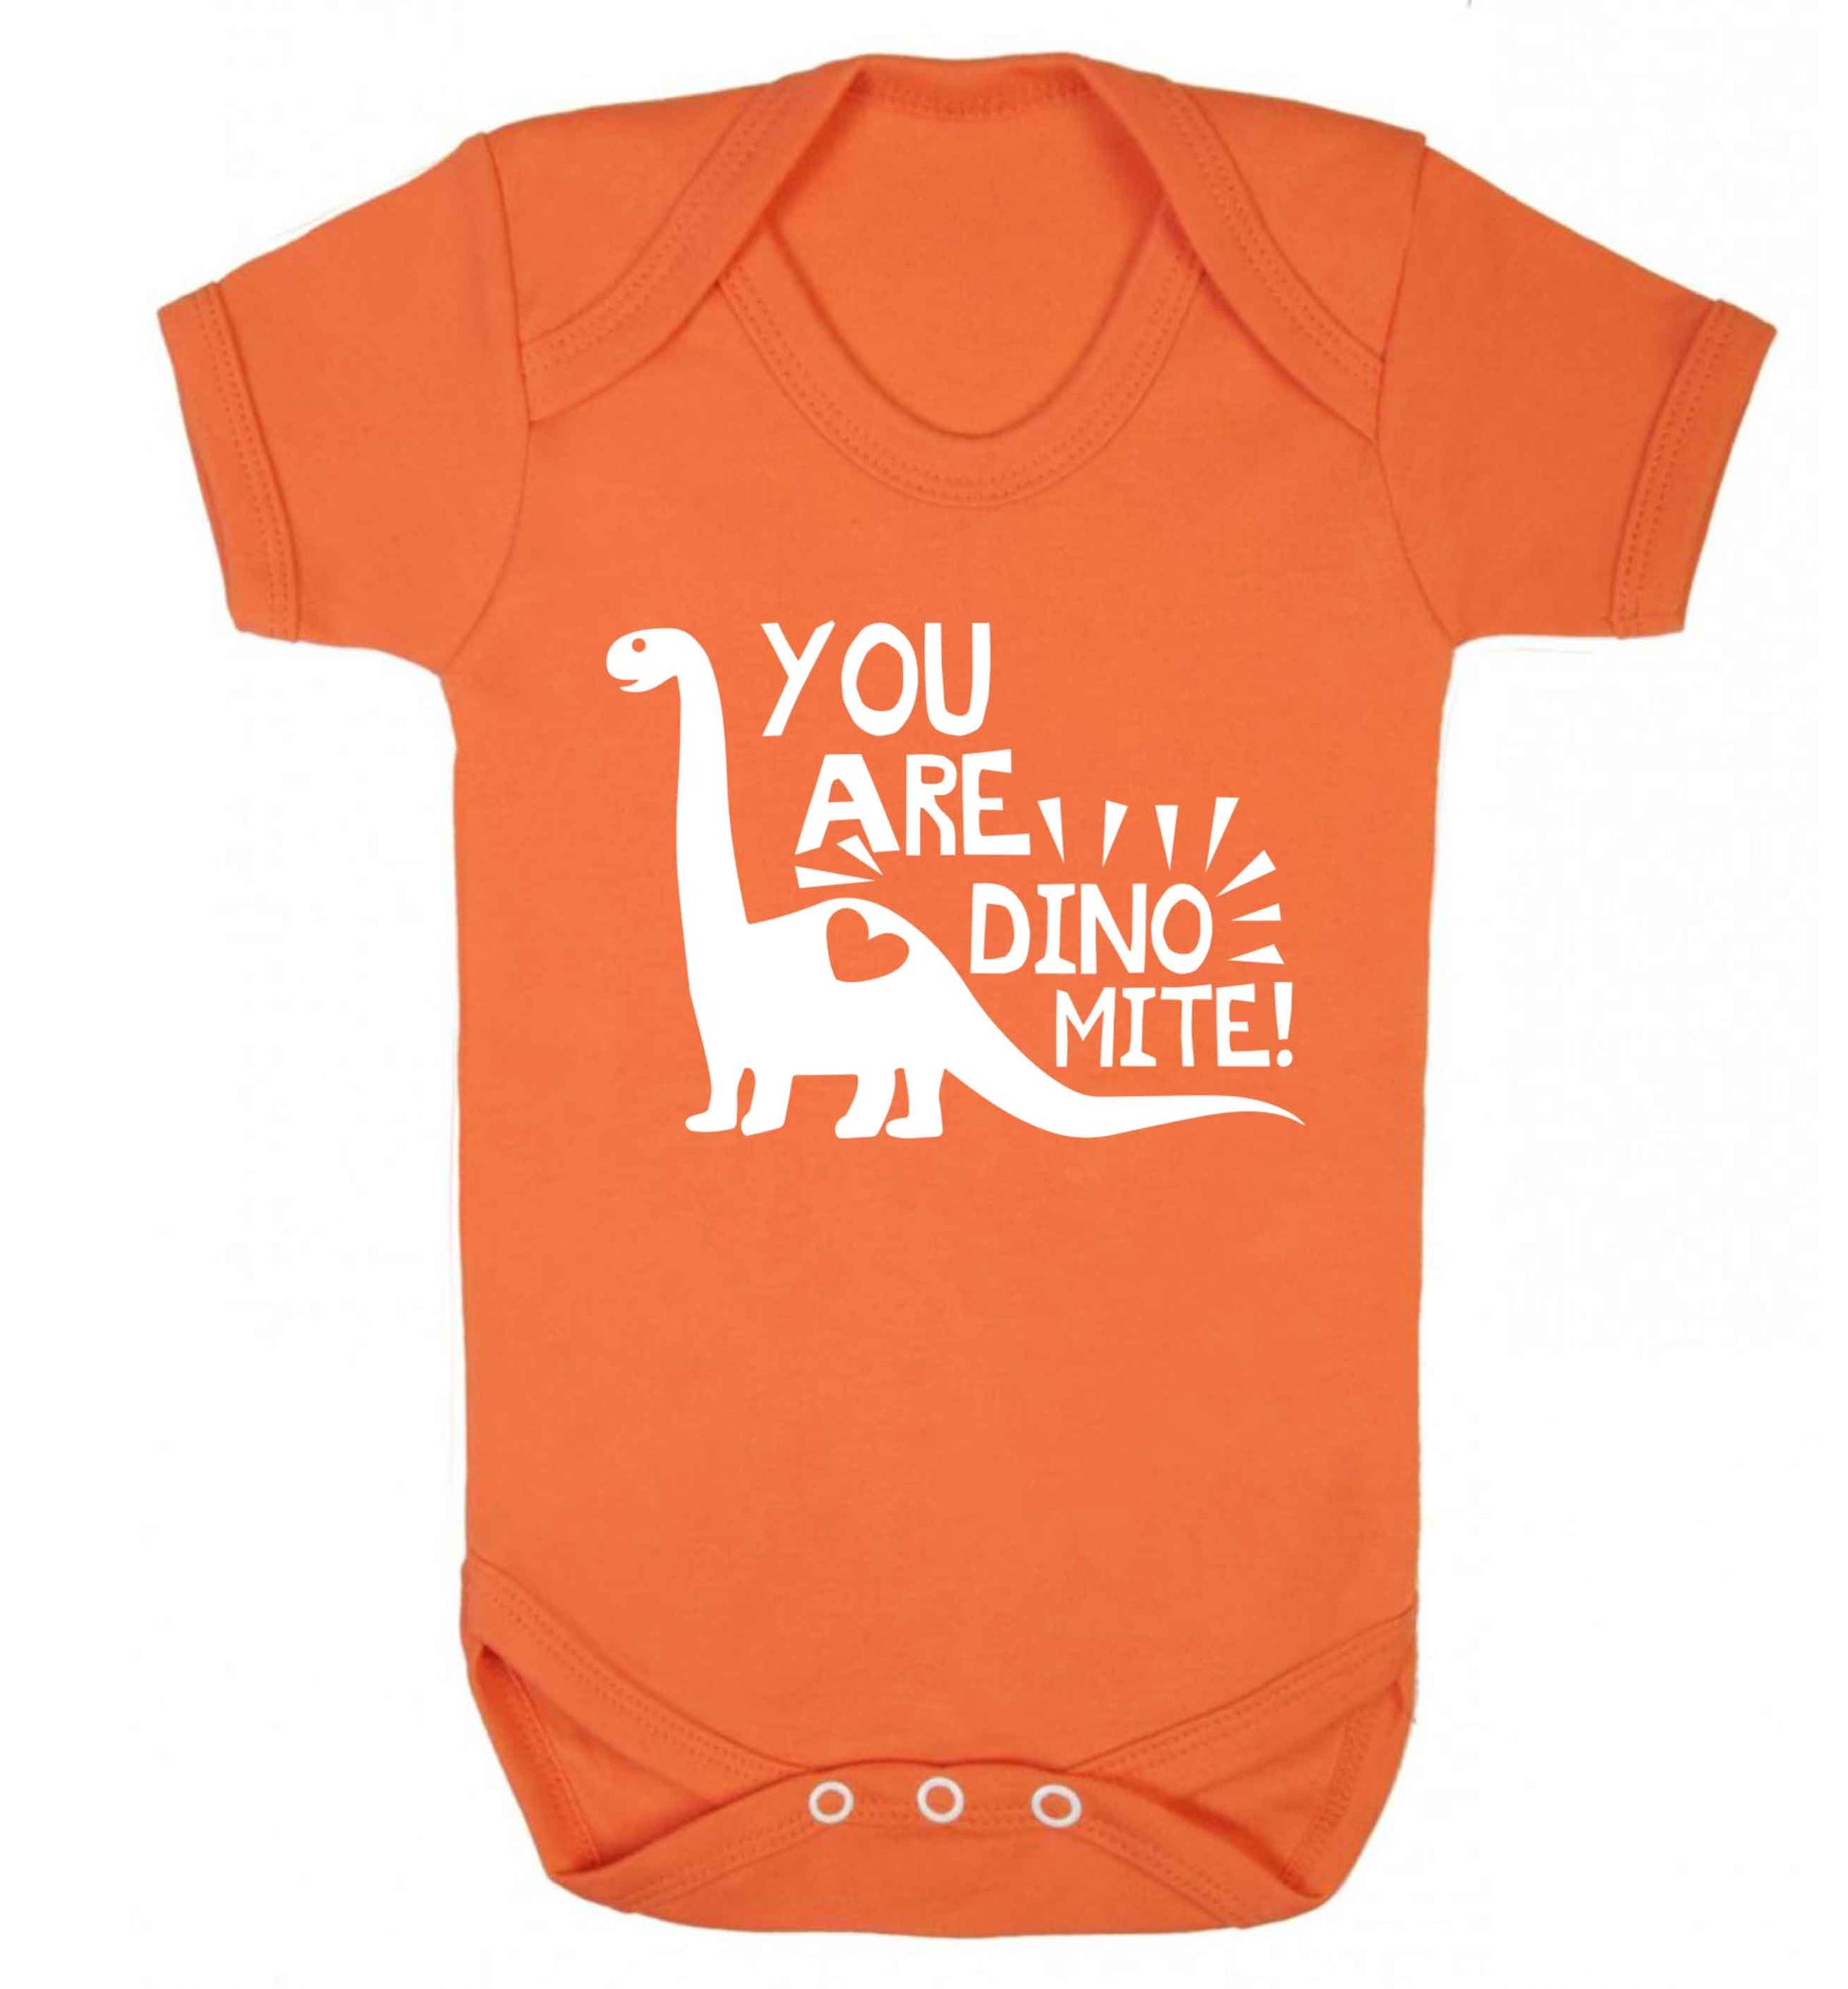 You are dinomite! Baby Vest orange 18-24 months